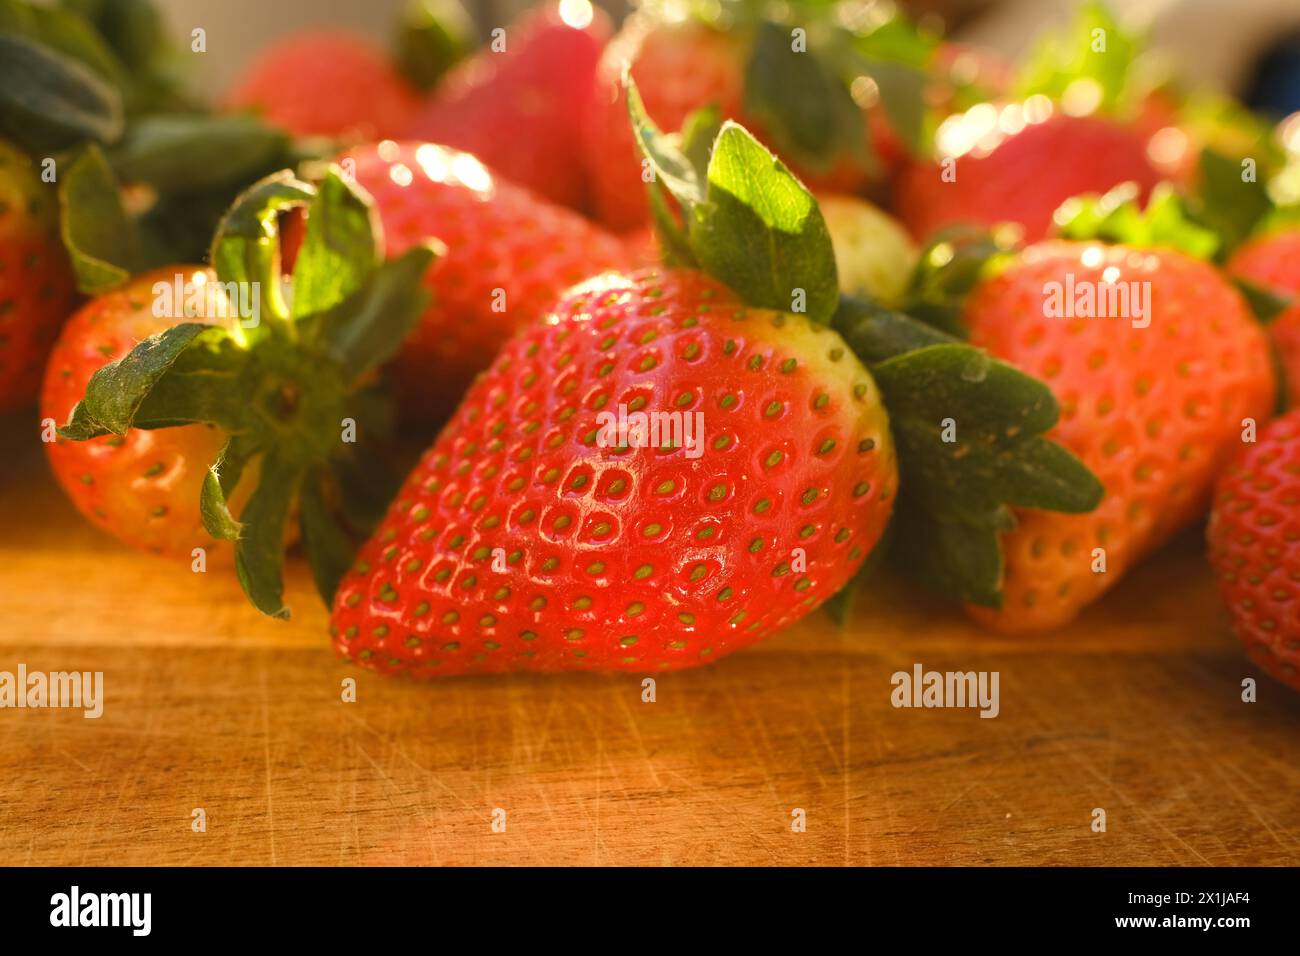 Appétissante fraises fraîches rouges mûres, Fragaria, sur planche de bois, rayons lumineux du soleil, fruits juteux de vitamine frais, concept riche de jardinage de récolte, ve Banque D'Images